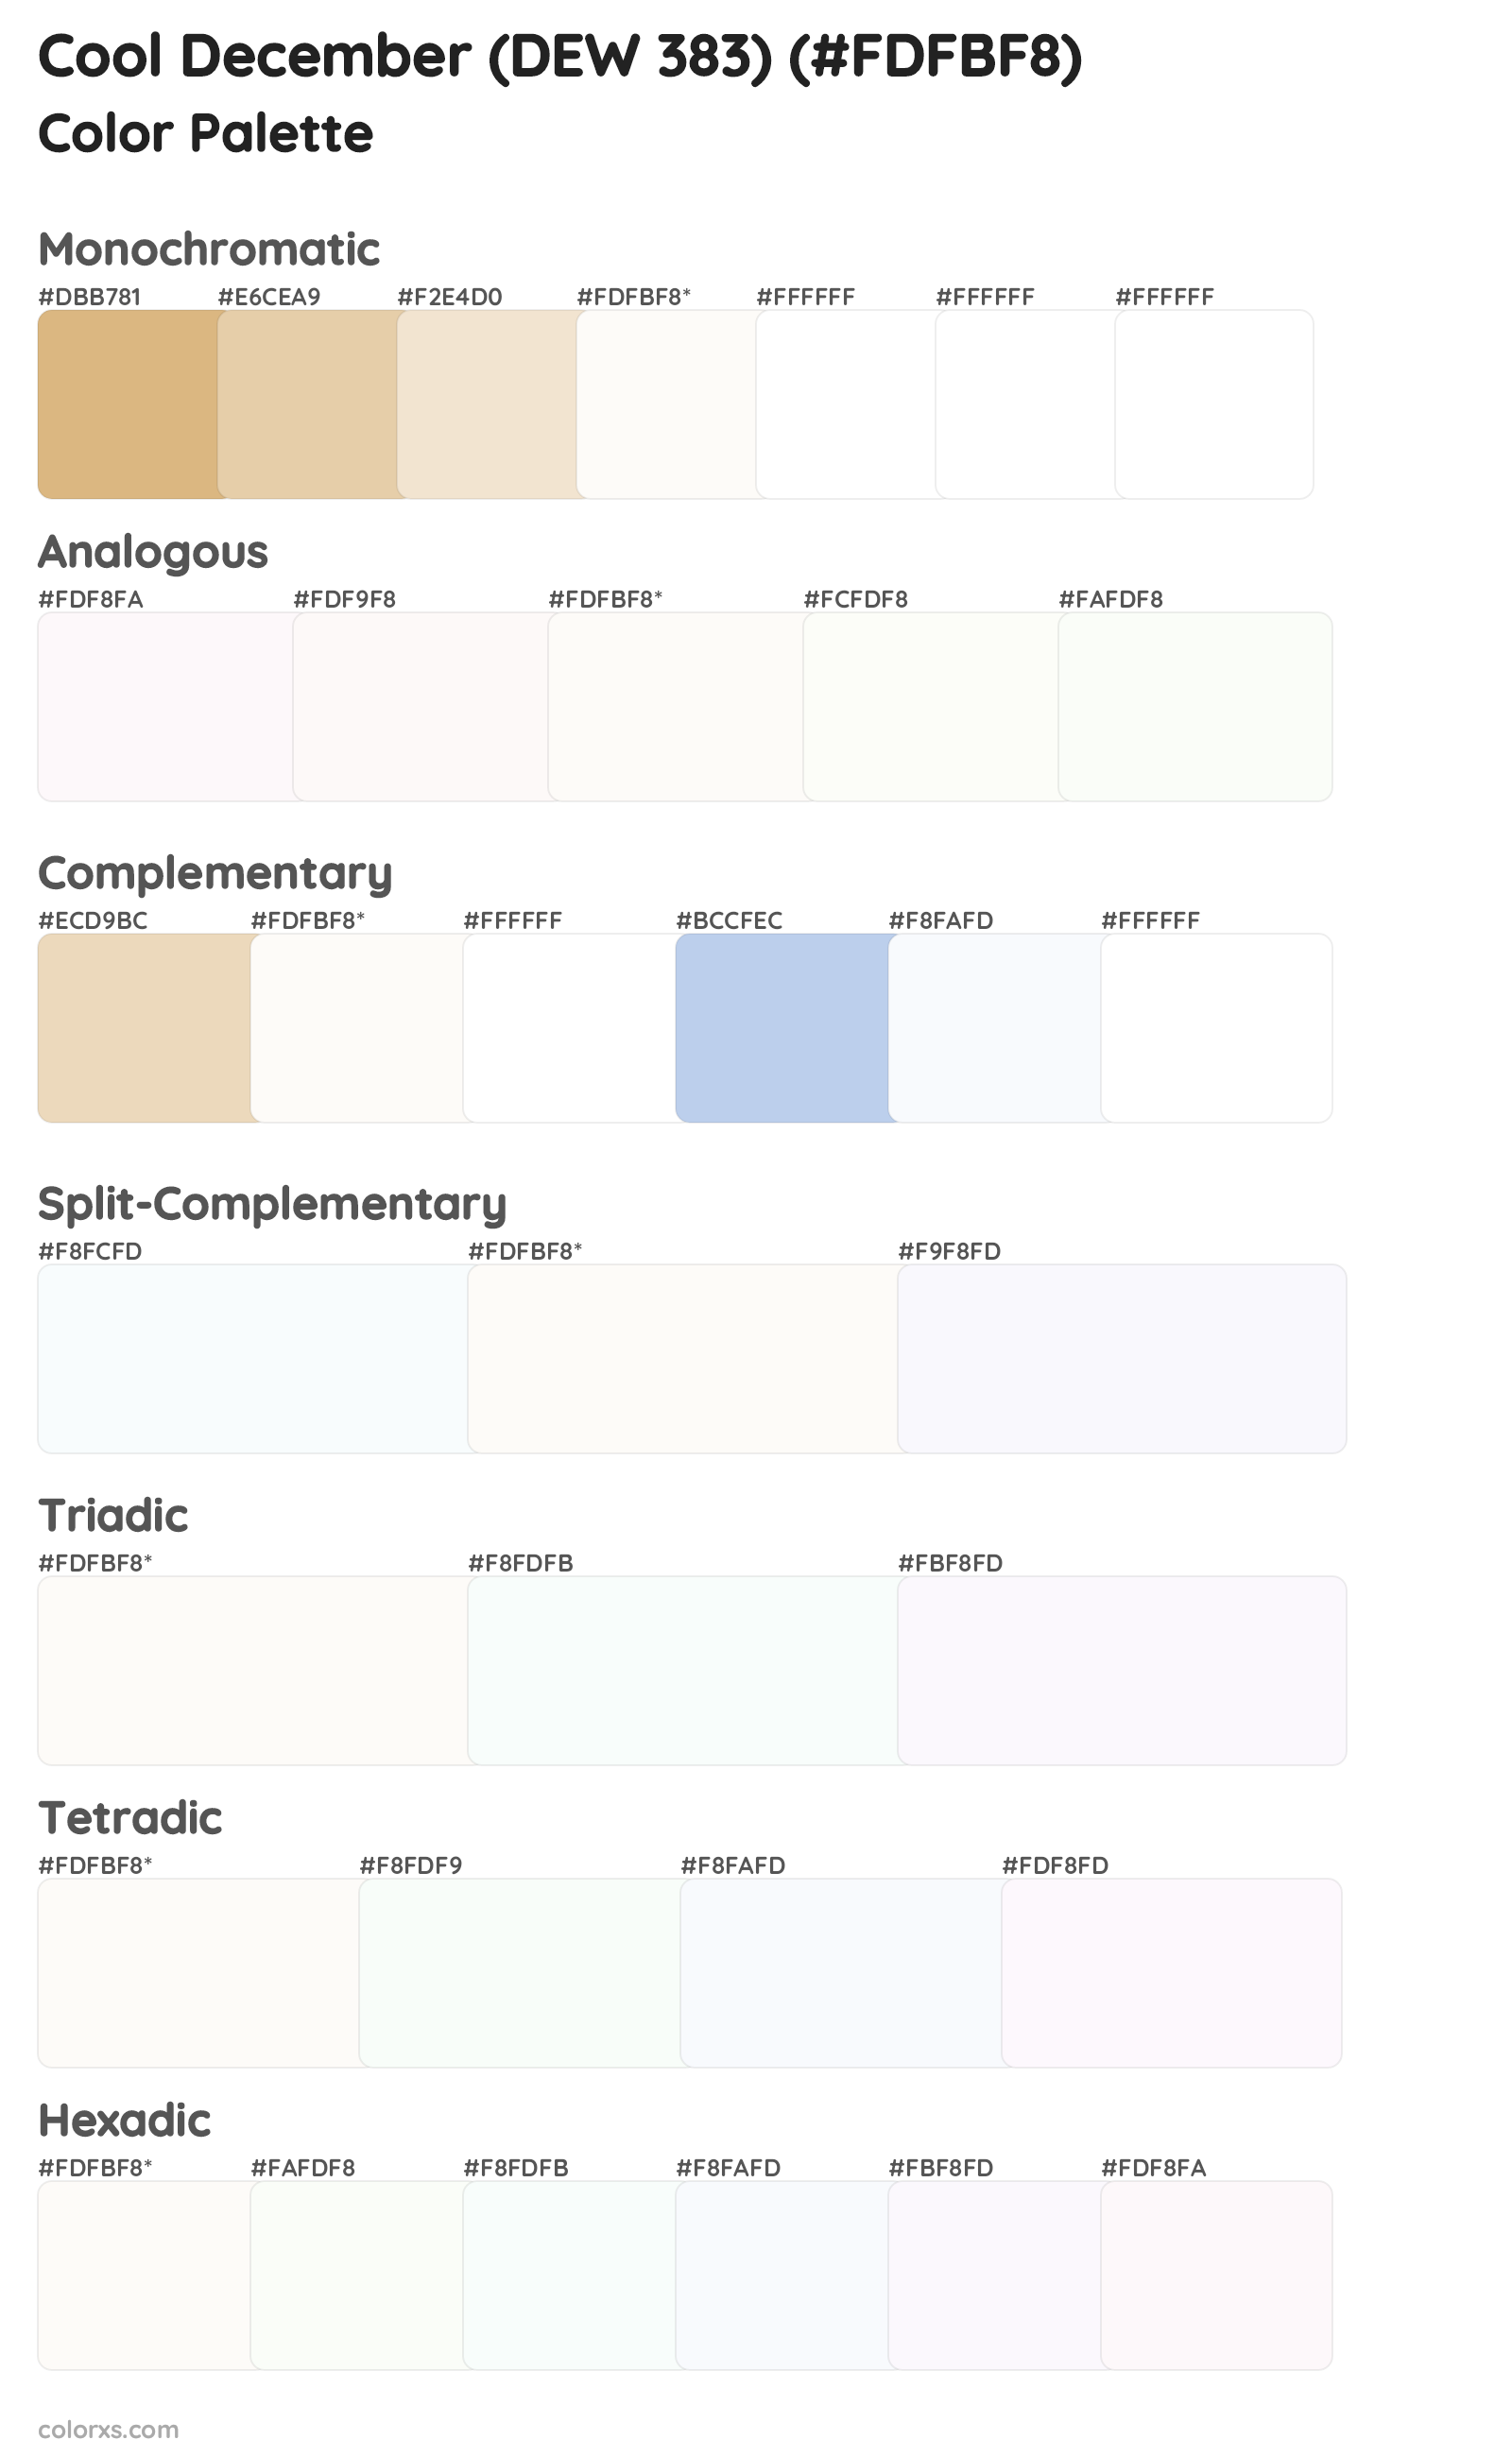 Cool December (DEW 383) Color Scheme Palettes